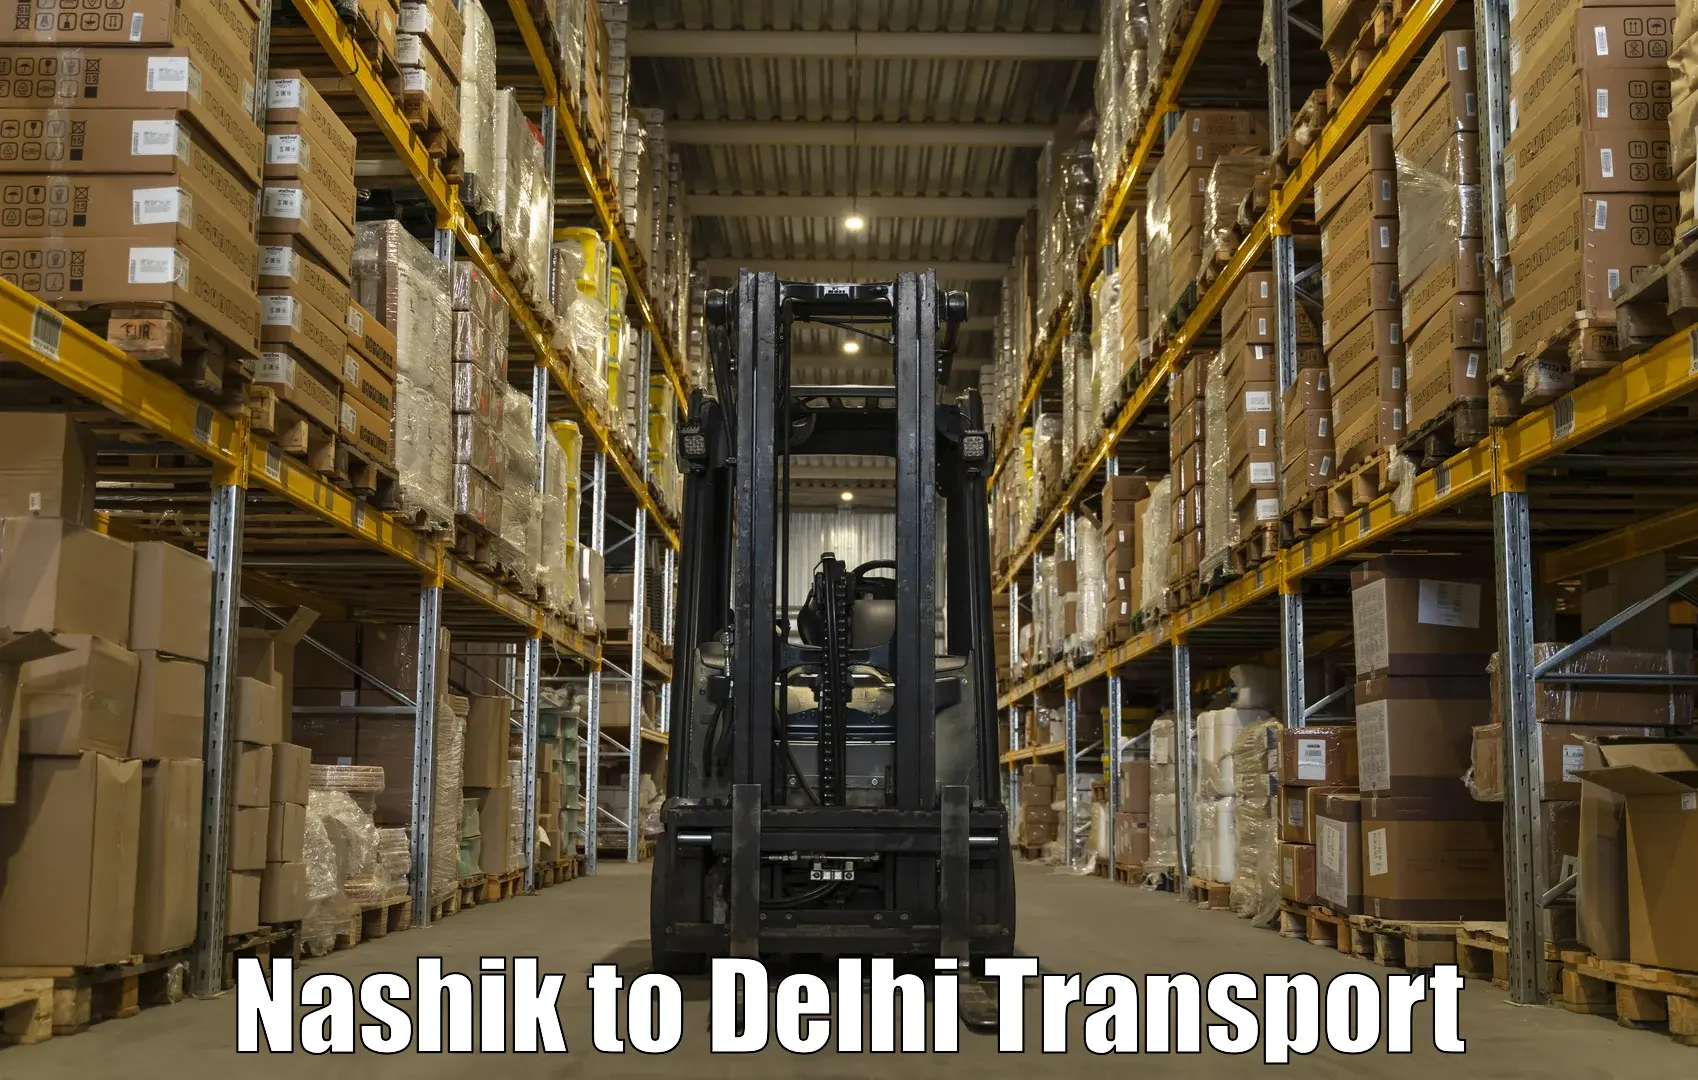 Door to door transport services Nashik to NCR